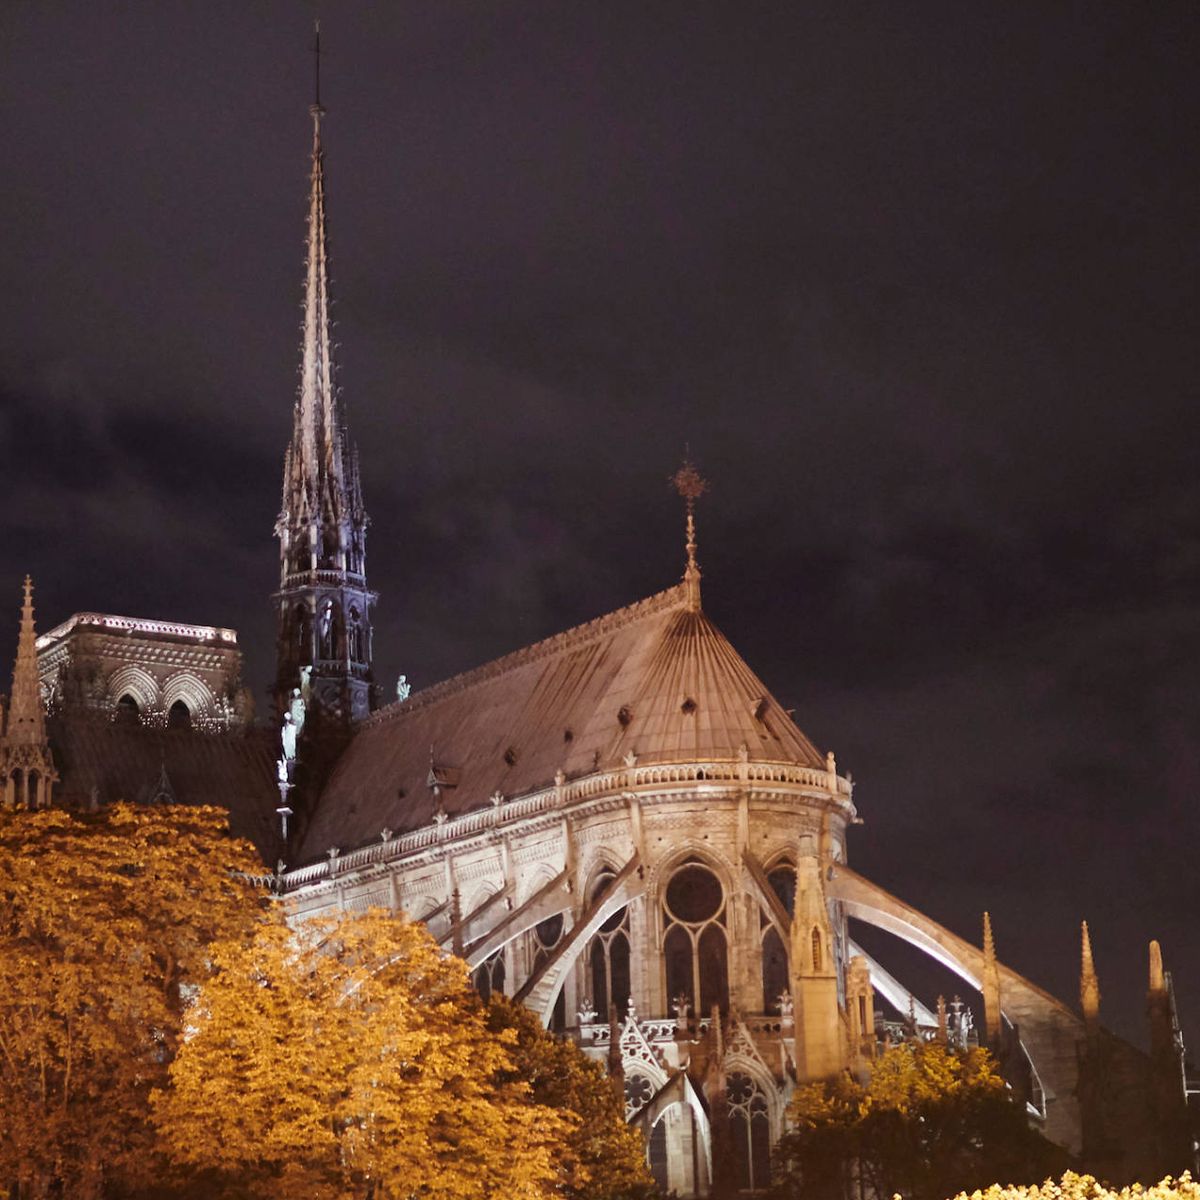 Notre Dame, el gran símbolo de la extinguida monarquía francesa